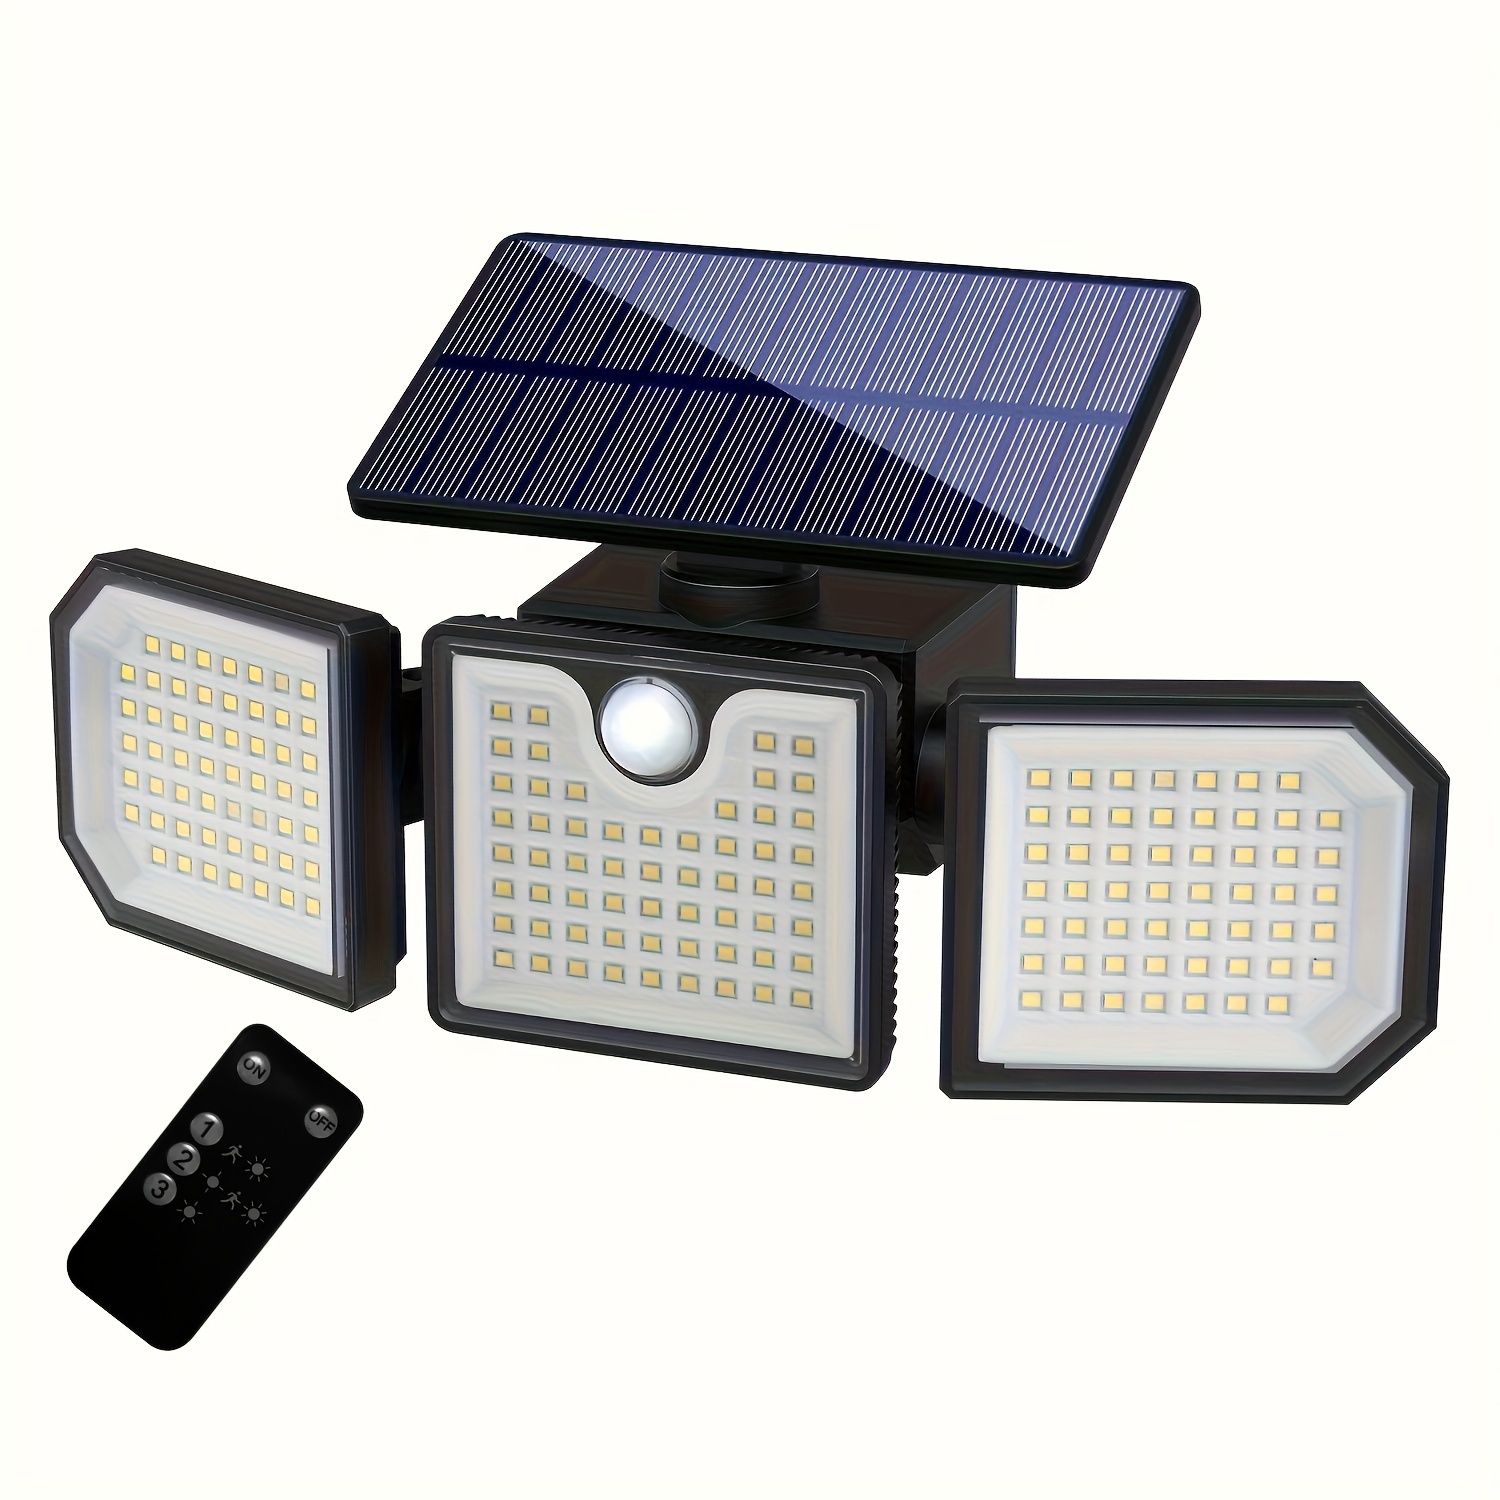 Lampe Solaire Exterieur, Projecteur LED Exterieur Detecteur de